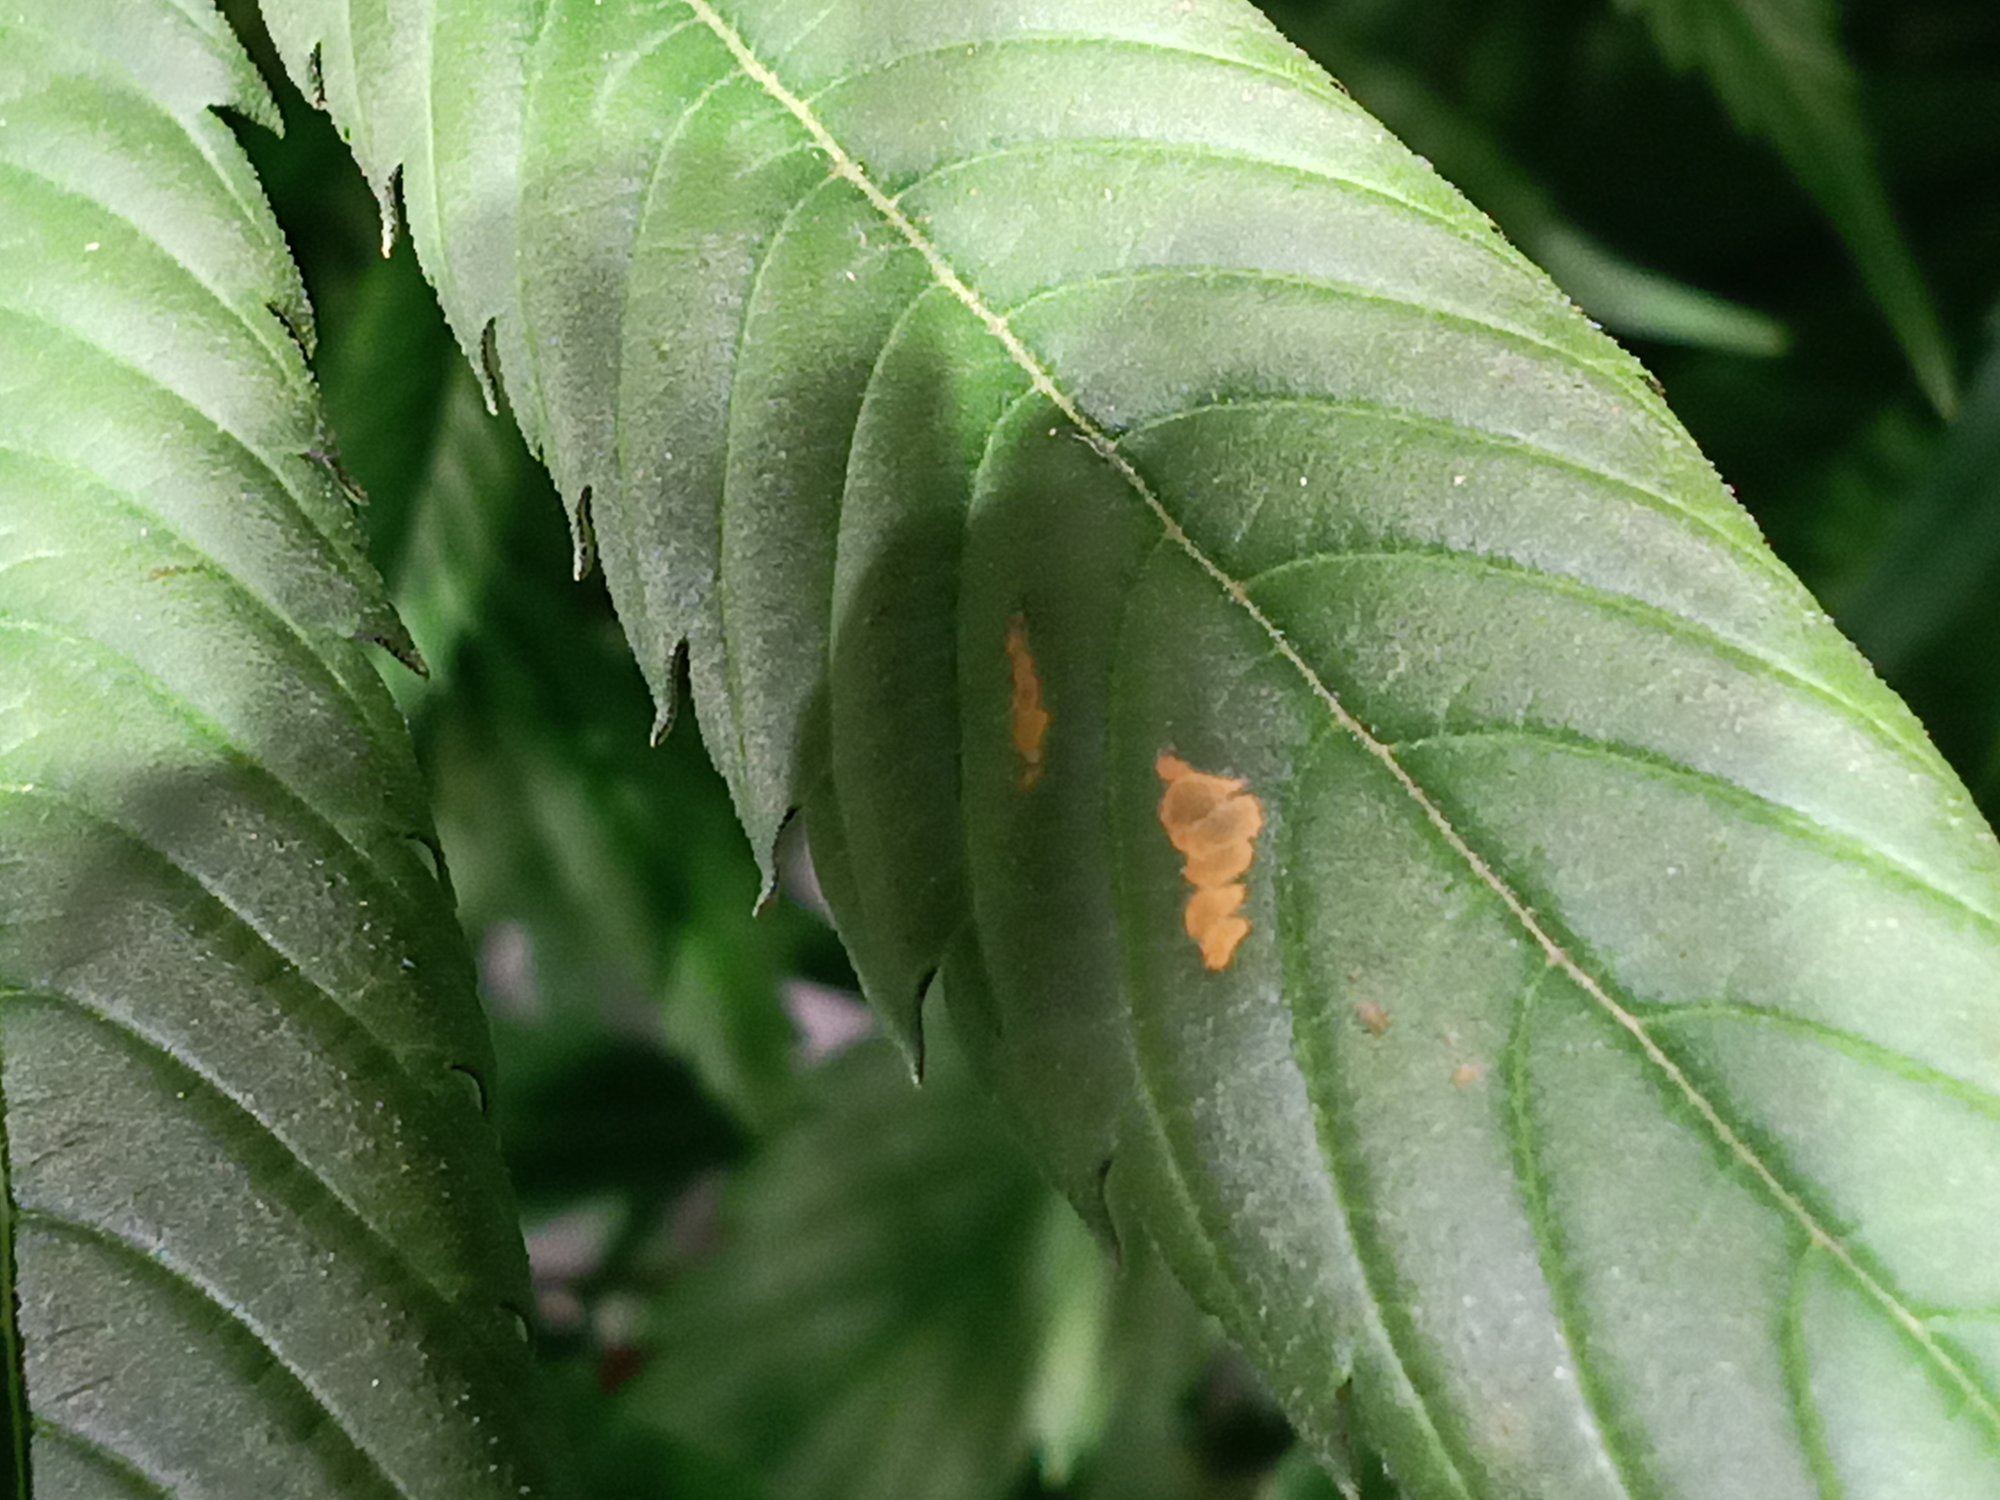 Orange spots on leaf help identify